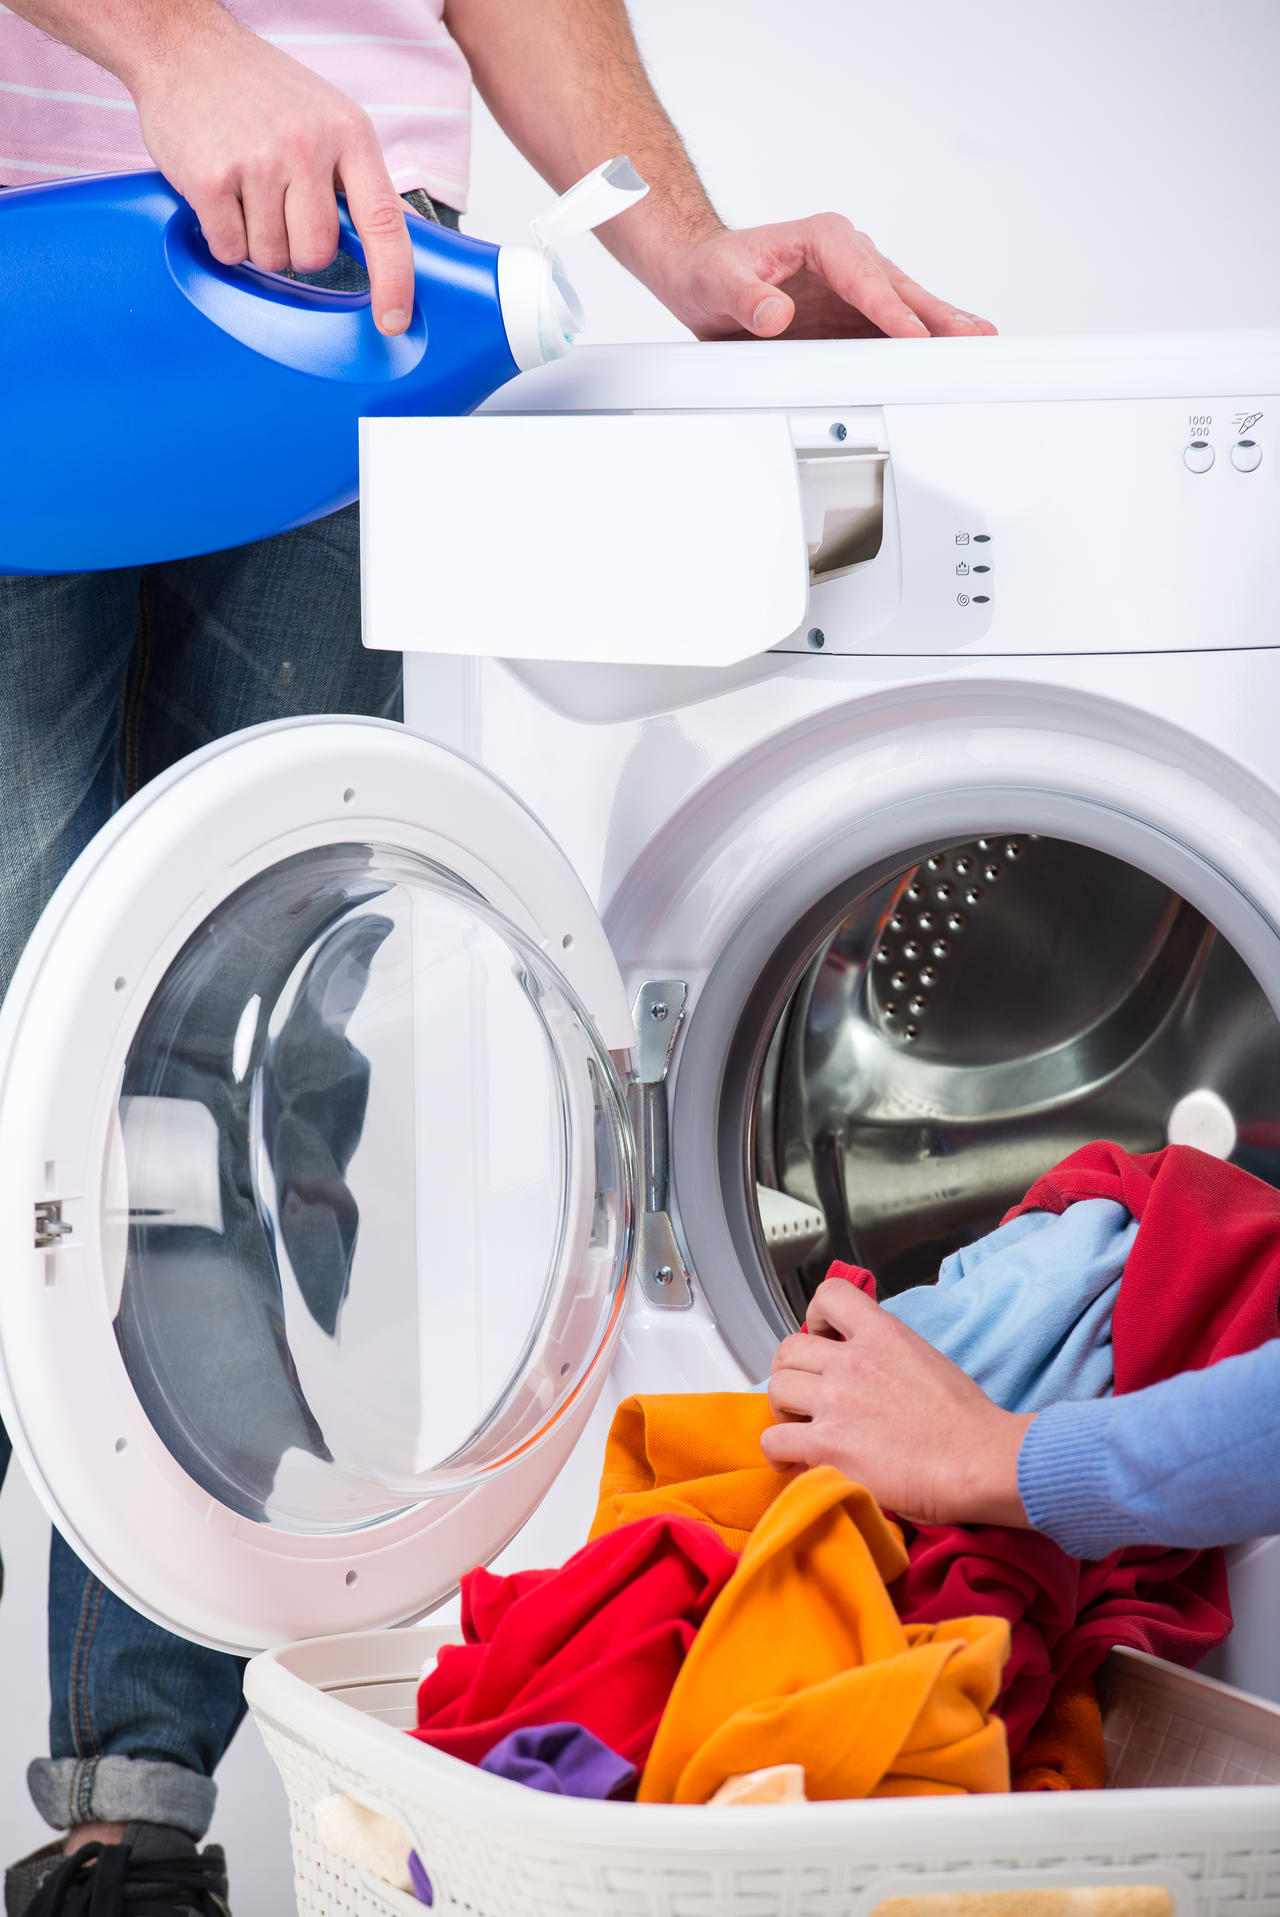 全自动洗衣机混合洗是啥意思_自动洗衣机混合洗怎么用_自动洗衣机的混合洗是什么意思